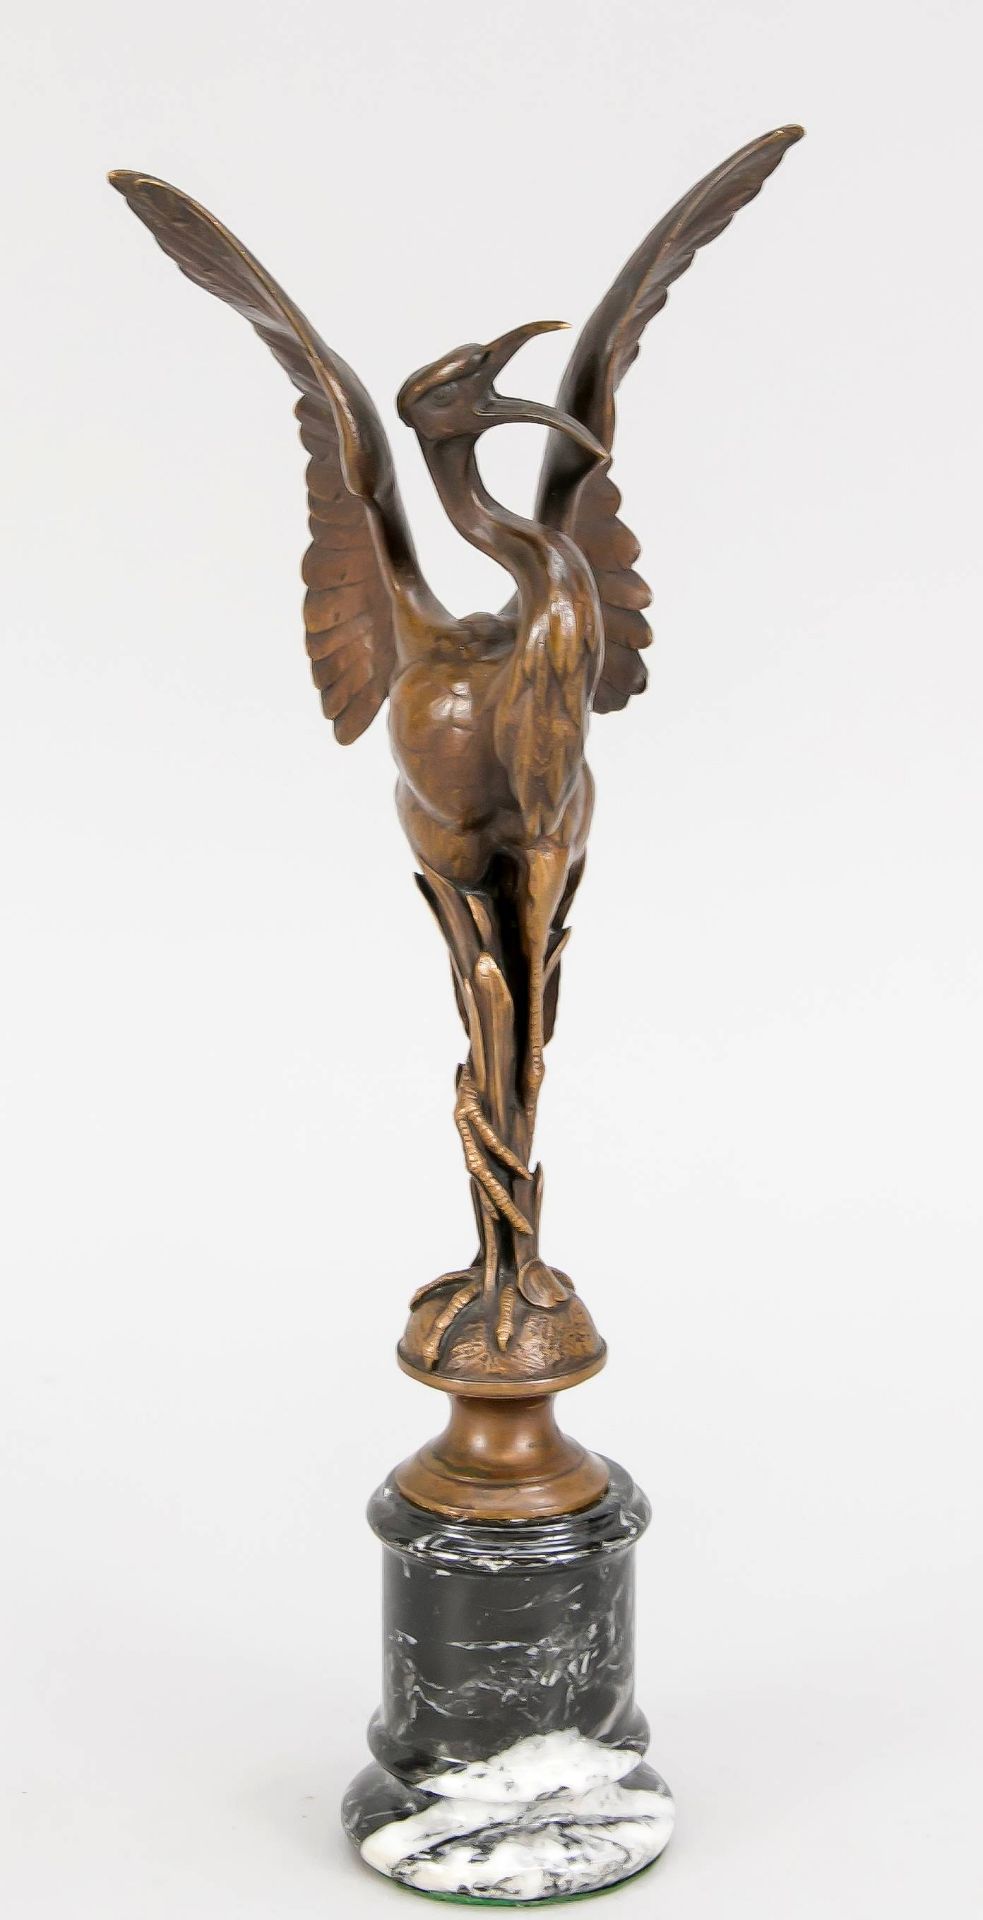 Anonymer Bildhauer um 1900, stehender Fischreiher, braun patinierte Bronze aufpilzförmigem Stand